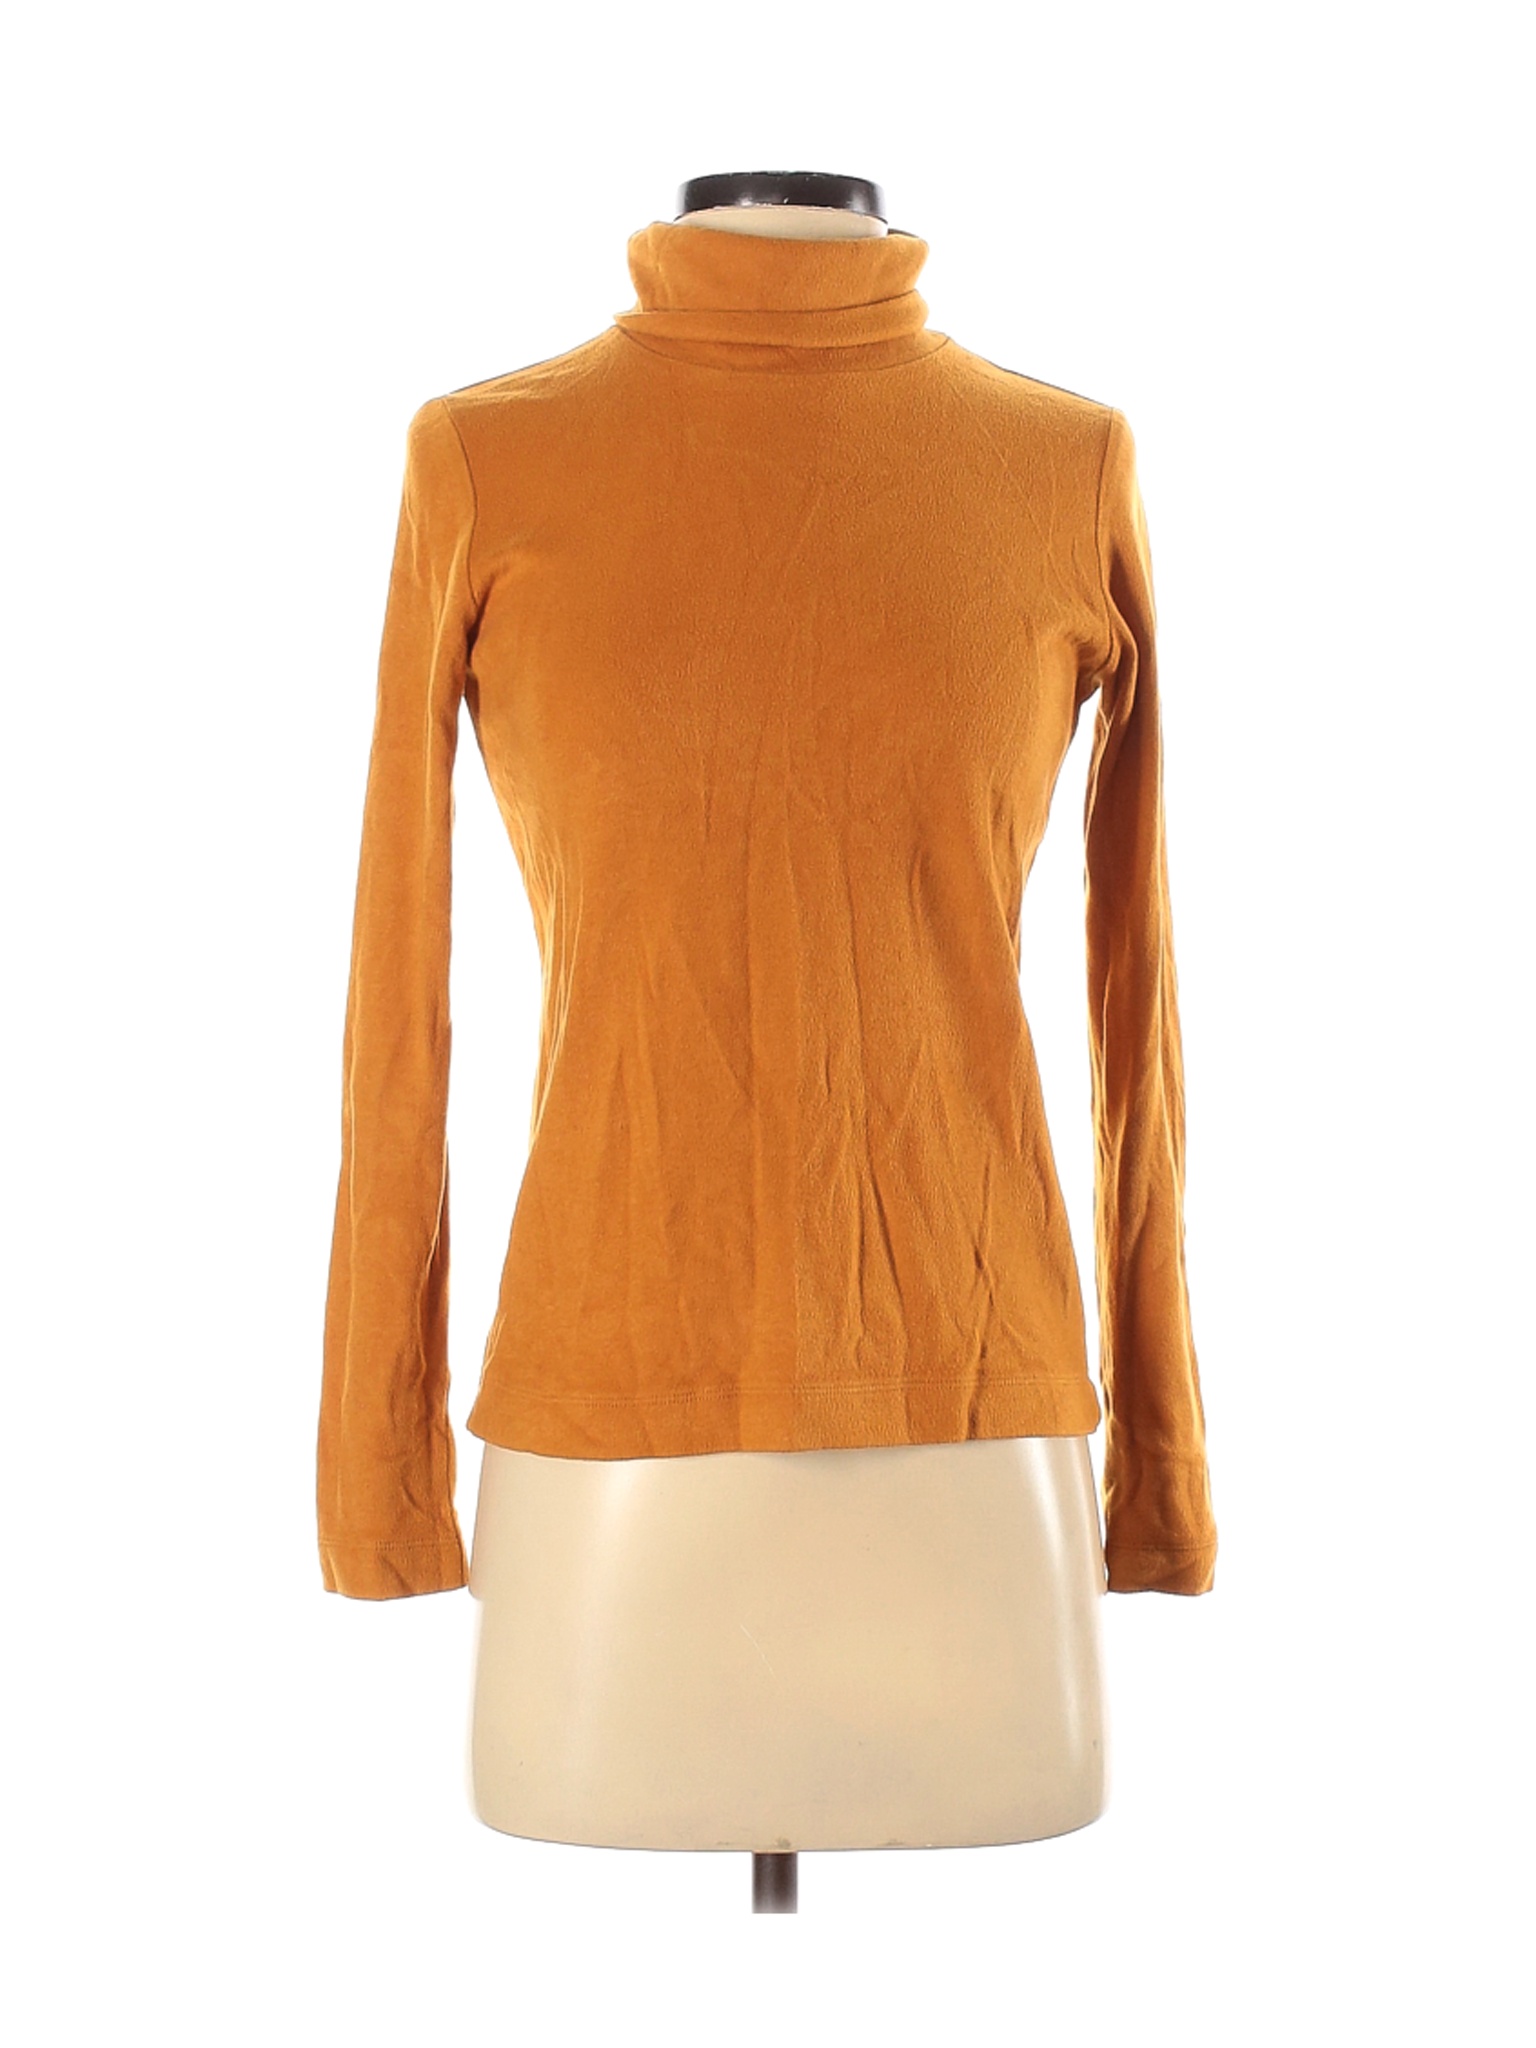 Uniqlo Women Orange Pullover Sweater XS | eBay